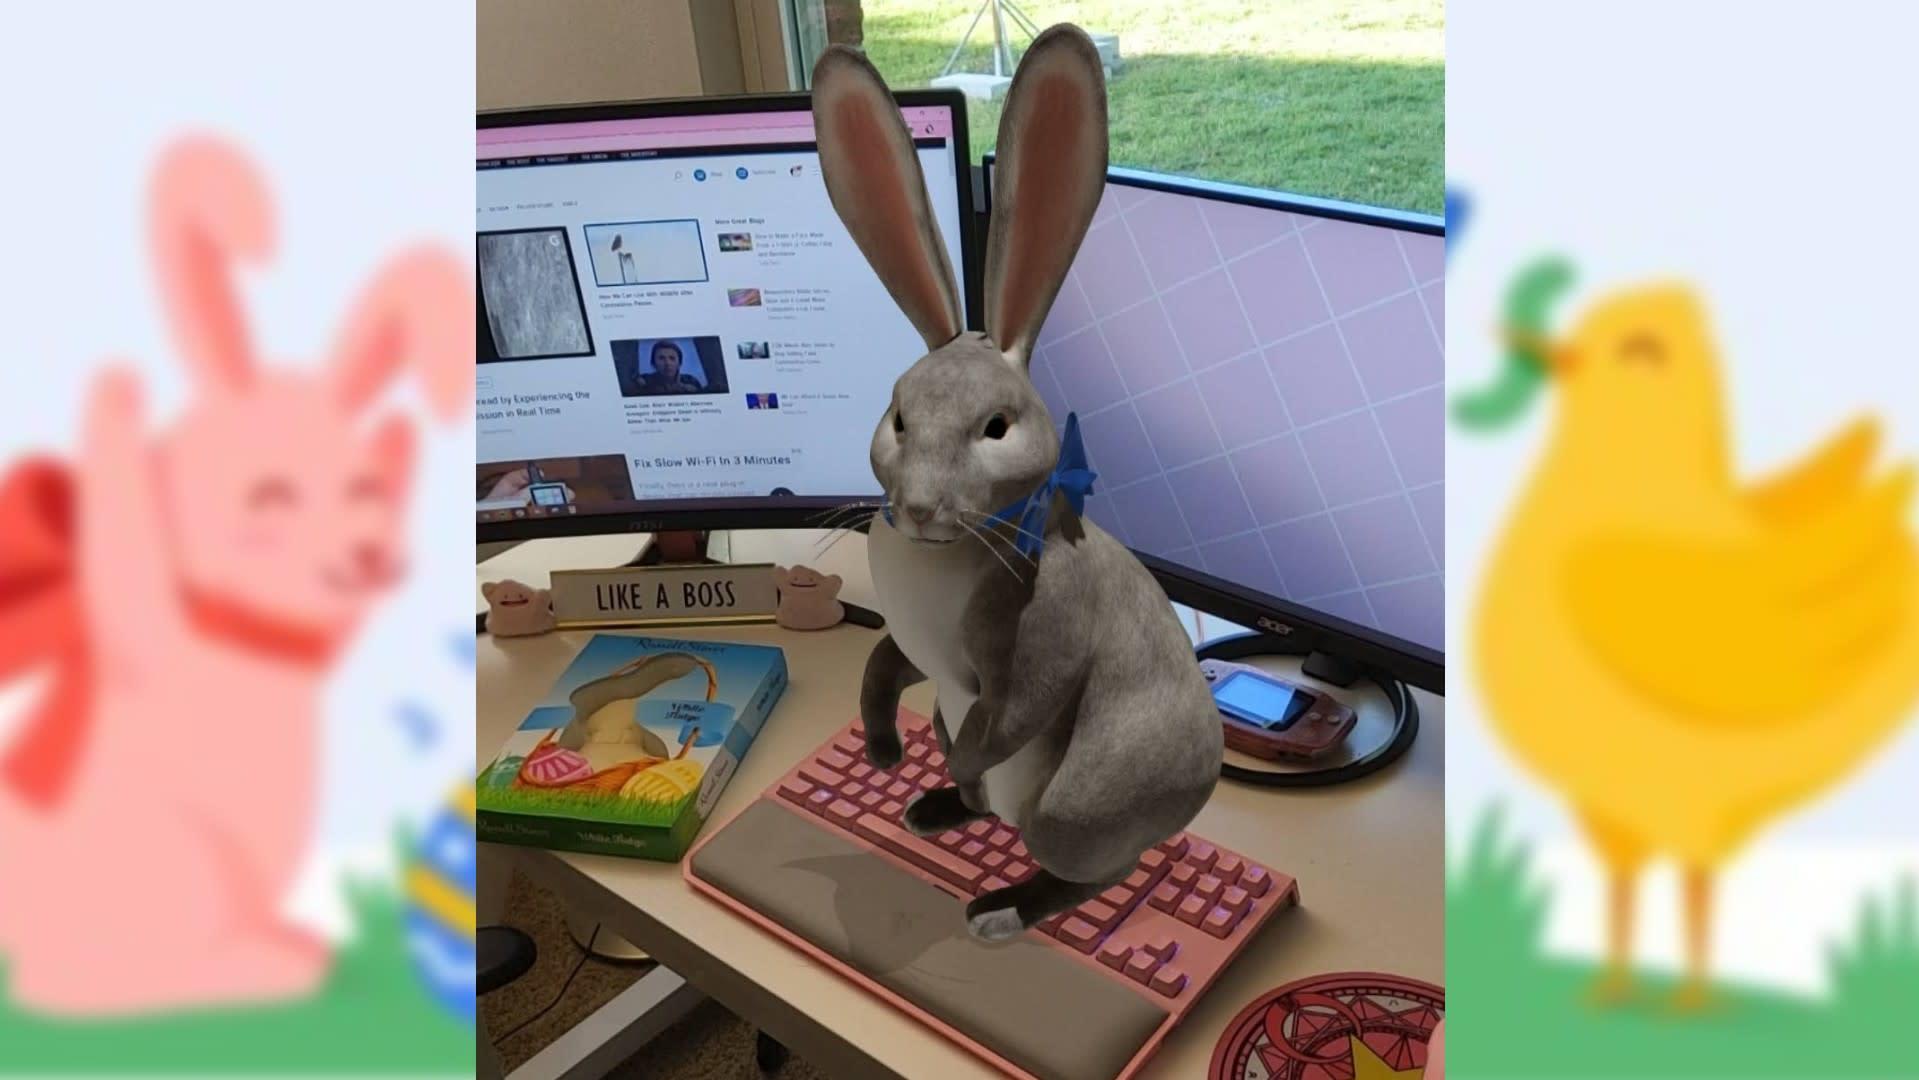 Animais em 3D da Google incluem agora o coelho da Páscoa - Go Outside